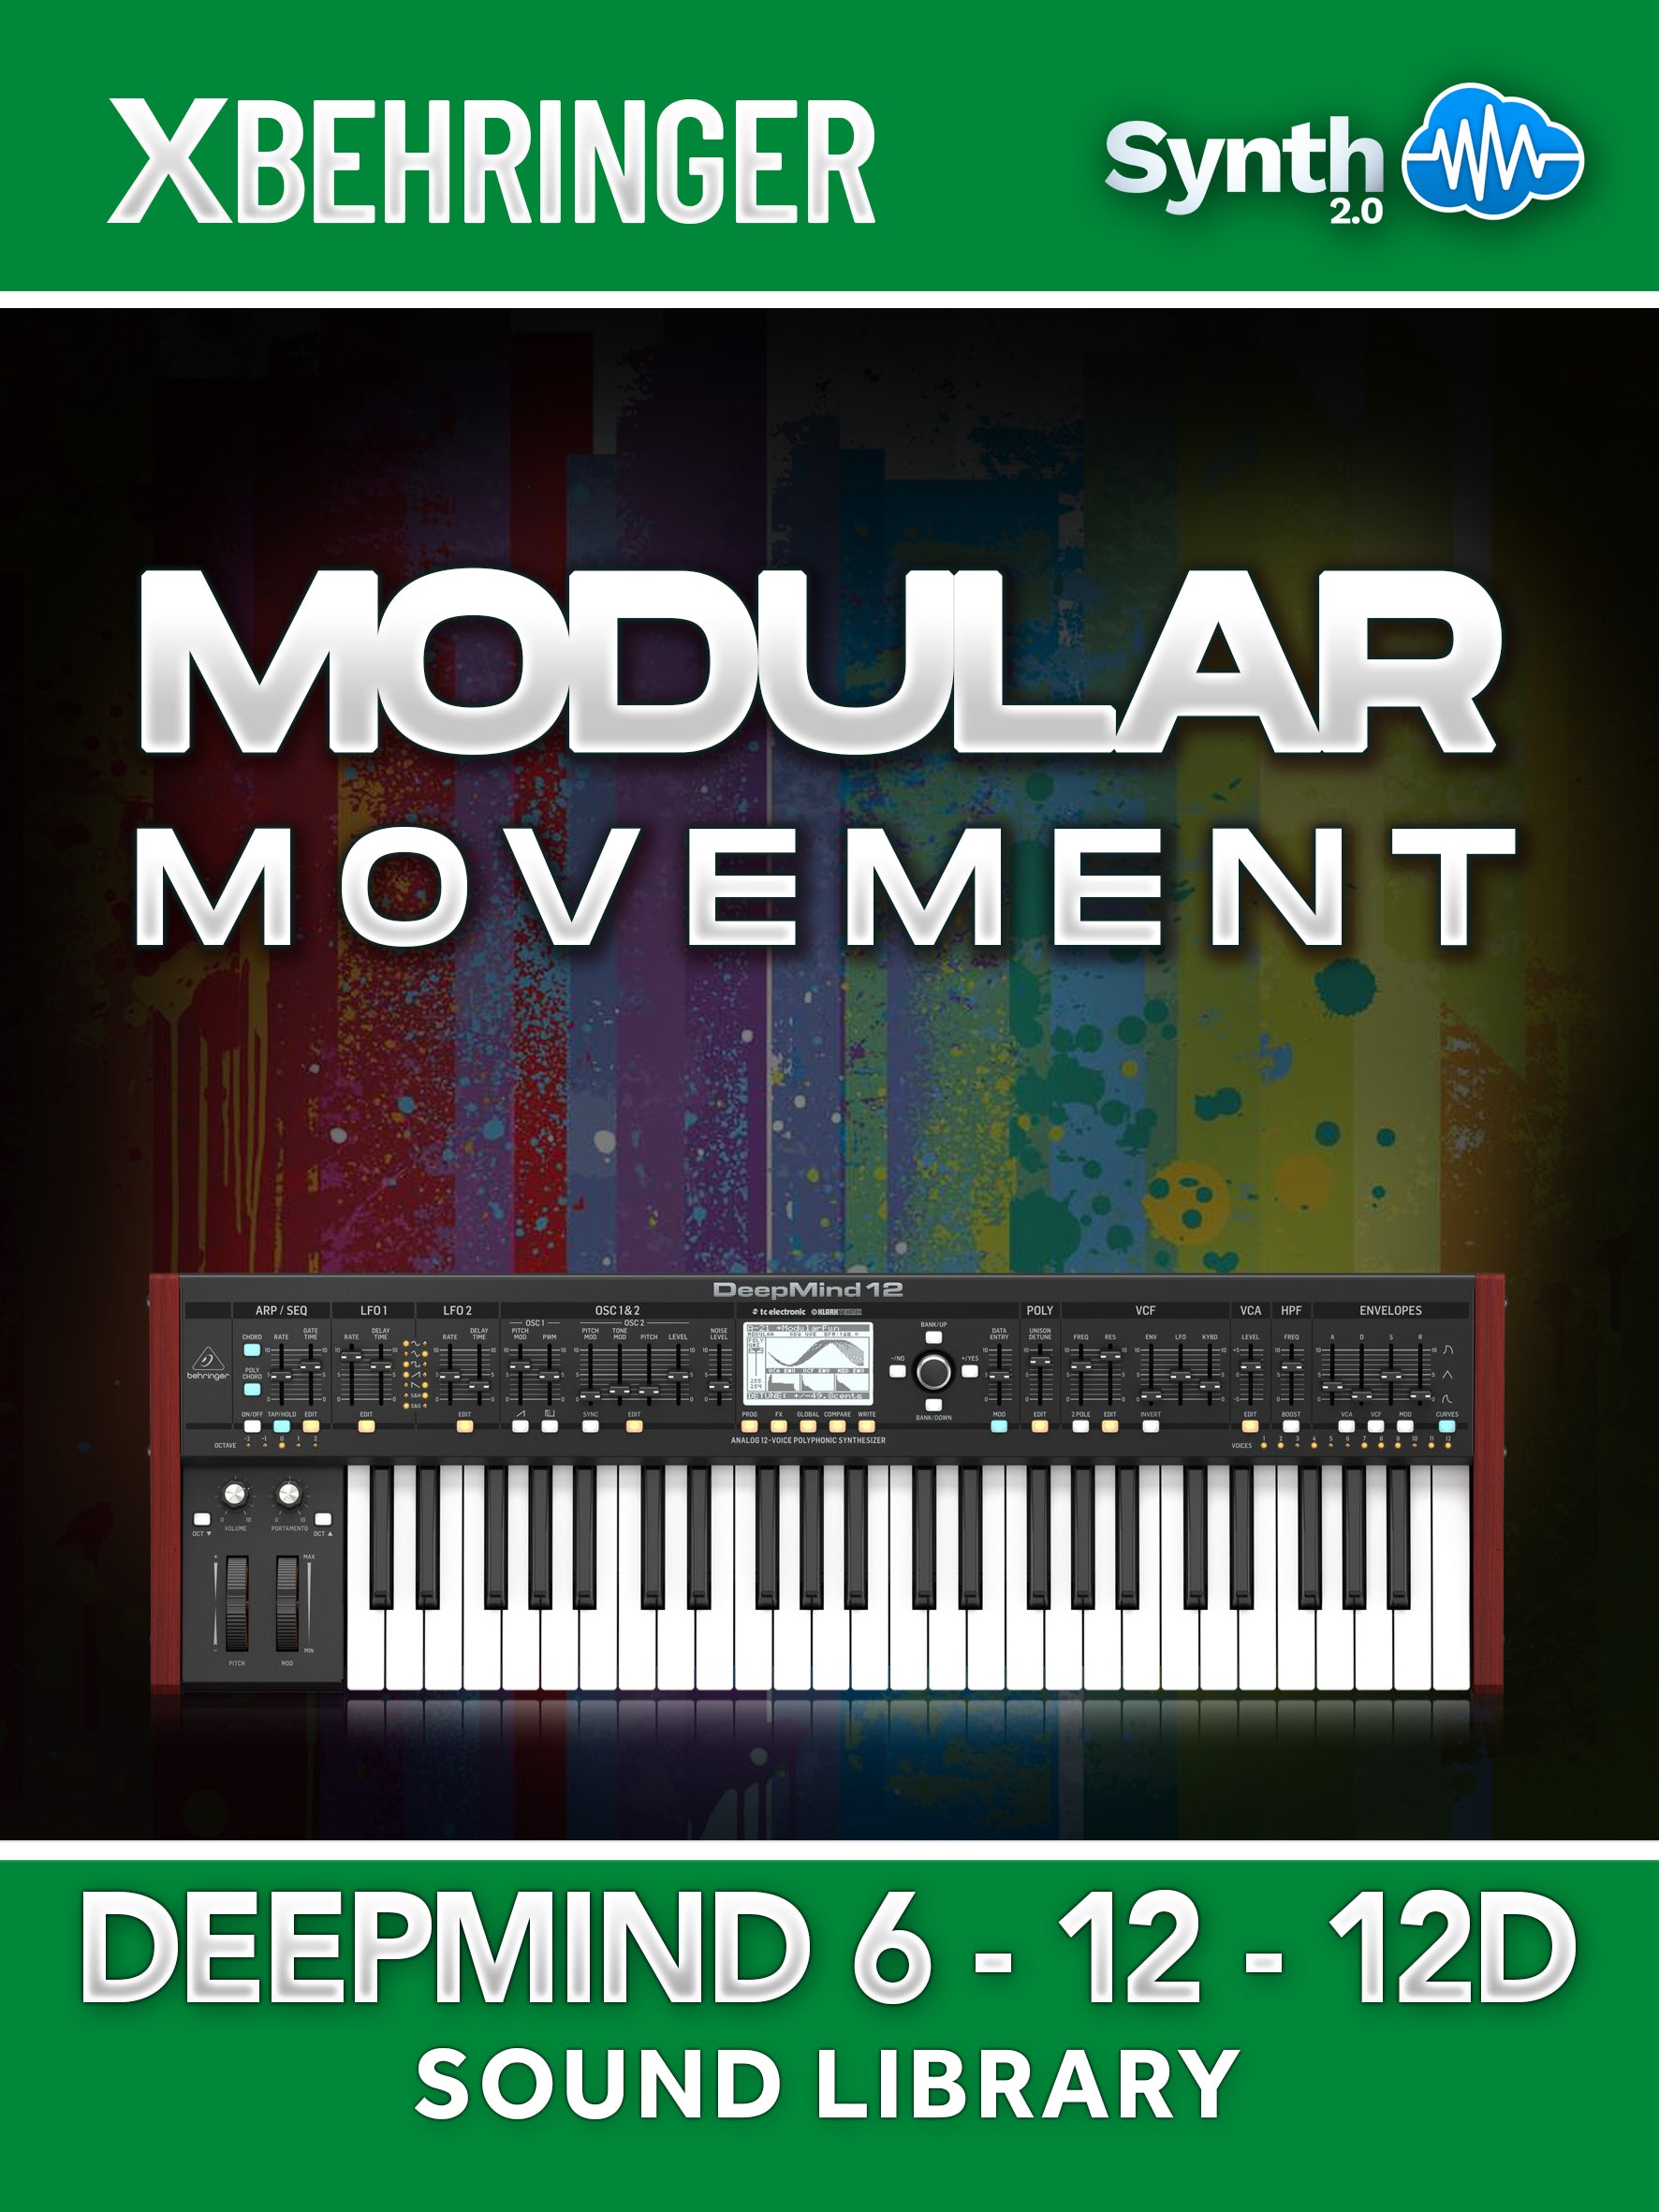 LFO140 - Modular Movement - Behringer Deepmind 6 / 12 / 12D ( 64 presets )